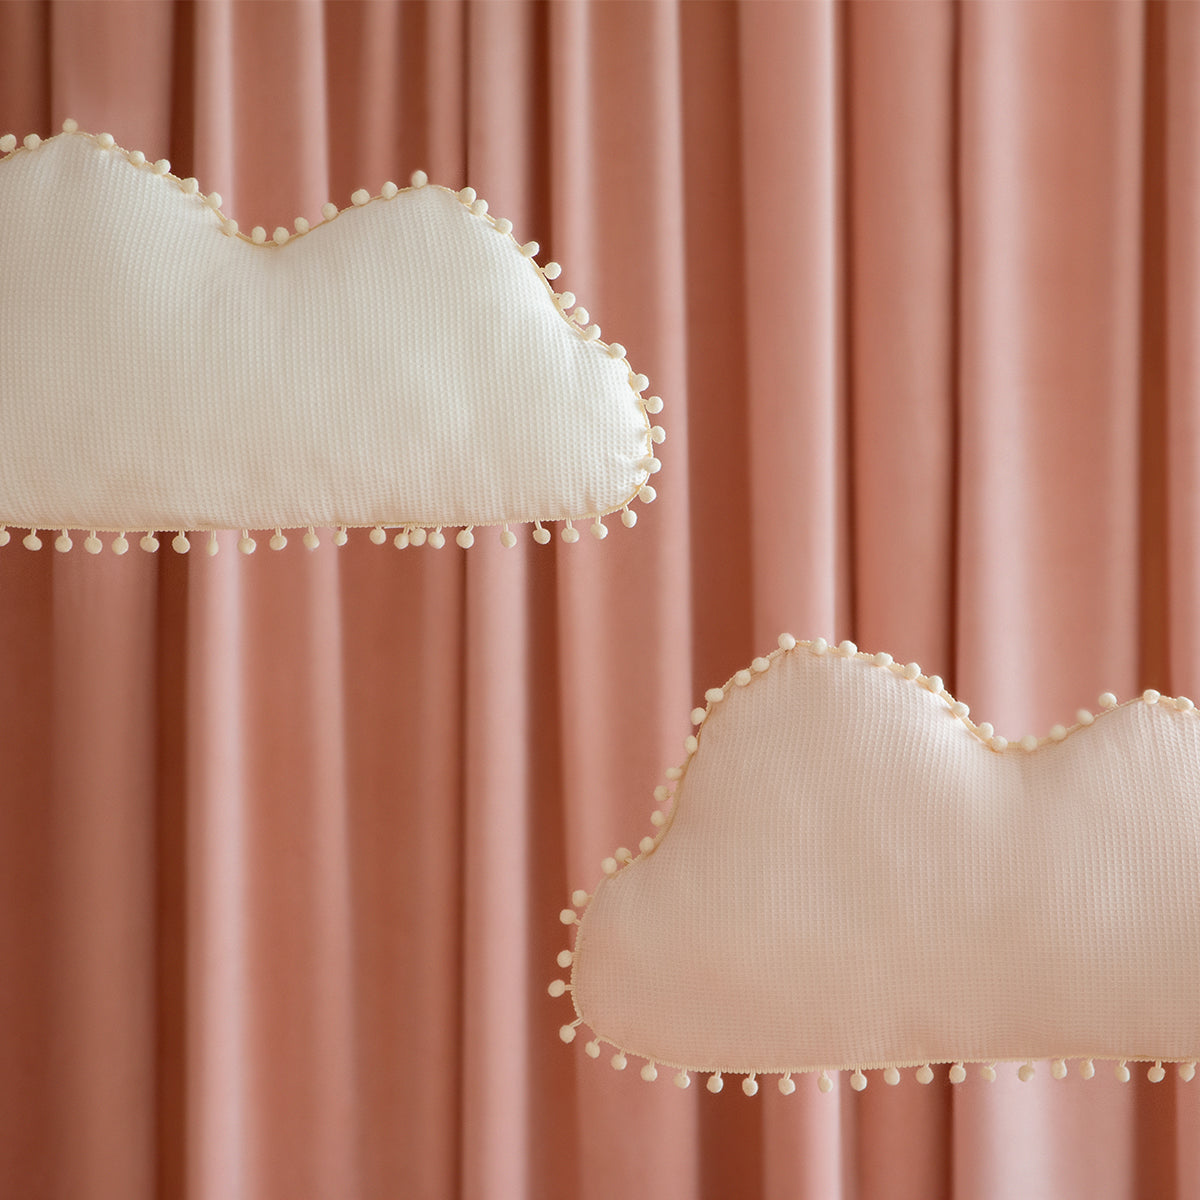 Dit heerlijk zachte Marshmallow kussen van Nobodinoz lijkt op een echte wolk en is speciaal ontworpen om de zintuigen van kinderen te stimuleren. VanZus